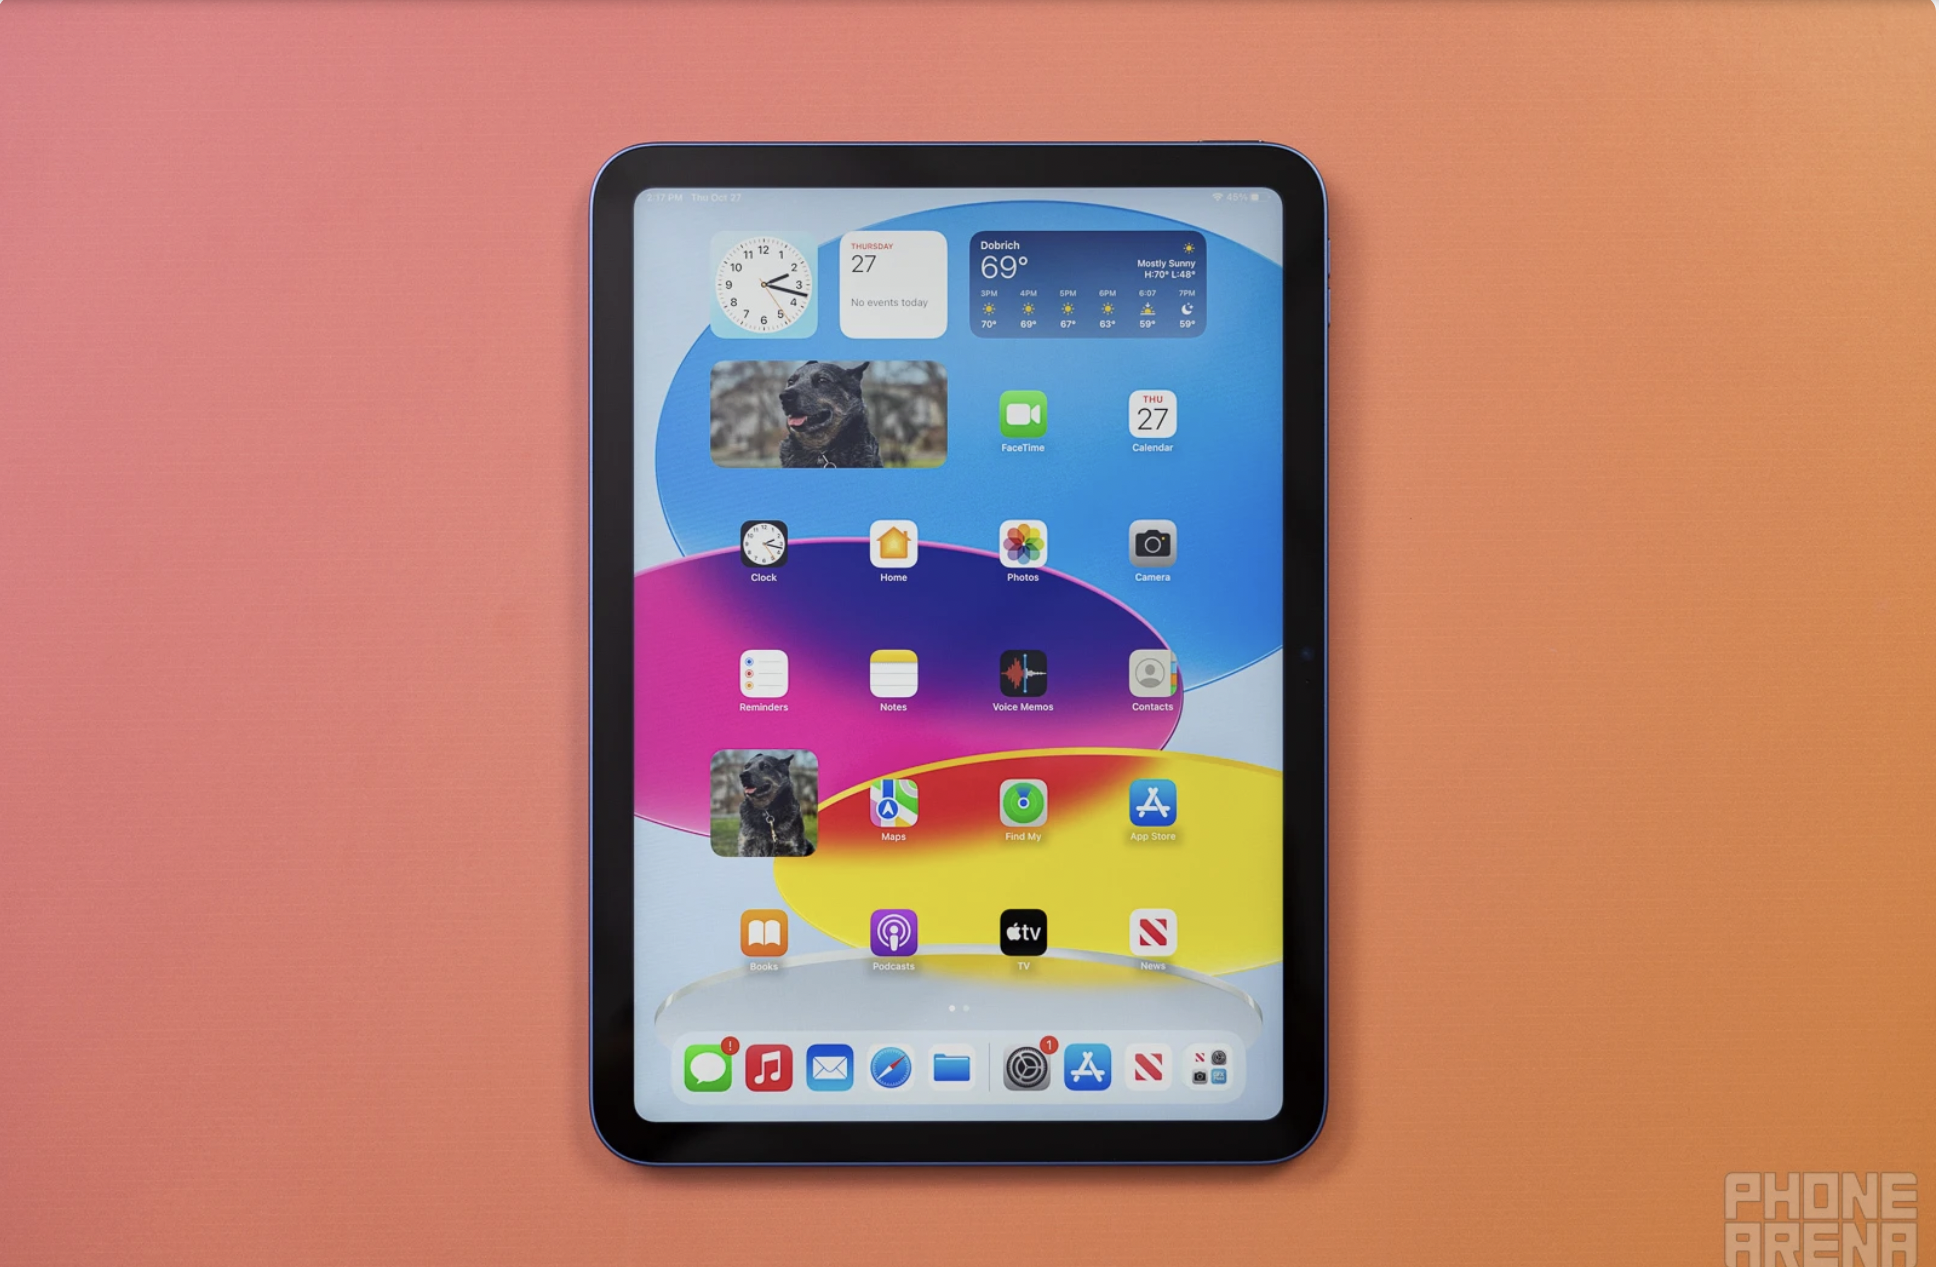 Chụp màn hình iPad có thật sự đơn giản và nhanh chóng như bạn nghĩ